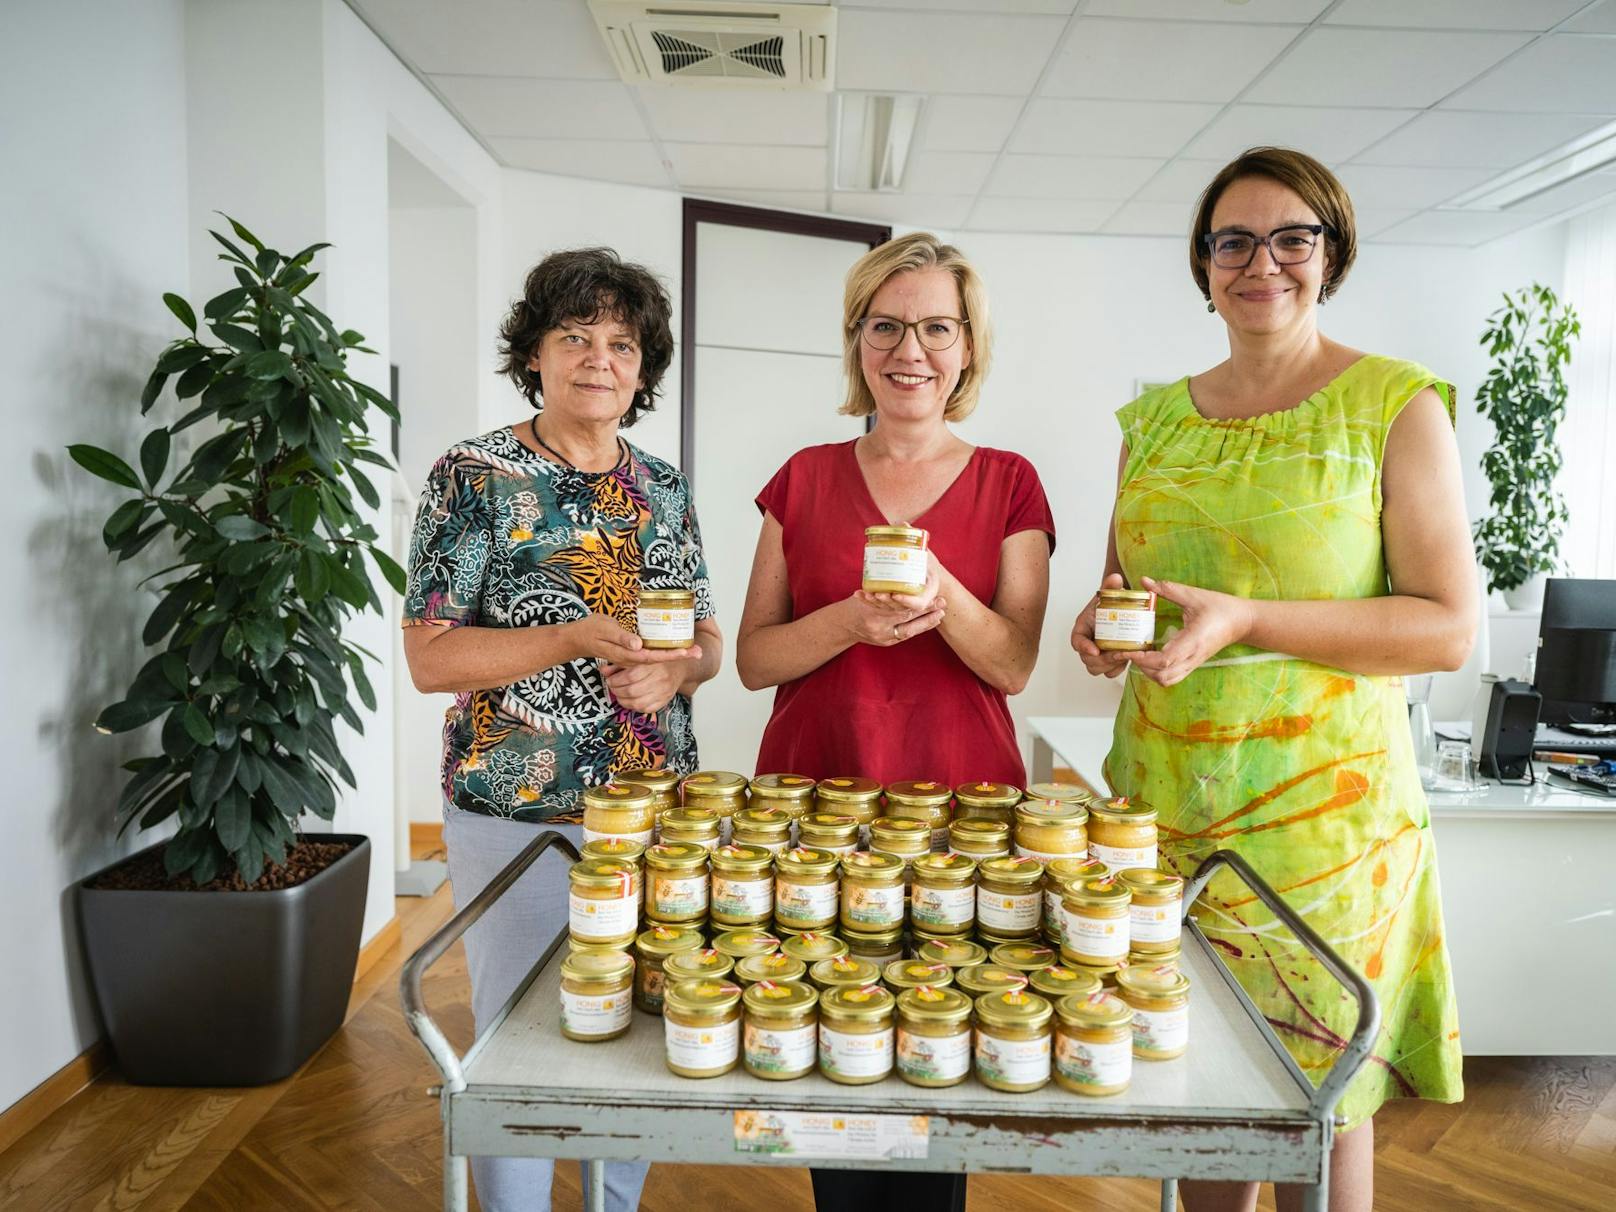 25 Kilogramm Honig konnten die beiden Imkerinnen&nbsp;Andrea Höflechner-Pöltl (links) und&nbsp;Verena Rücker (rechts) - gemeinsam im Bild mit Klimaschutzministerin Leonore Gewessler - ernten.